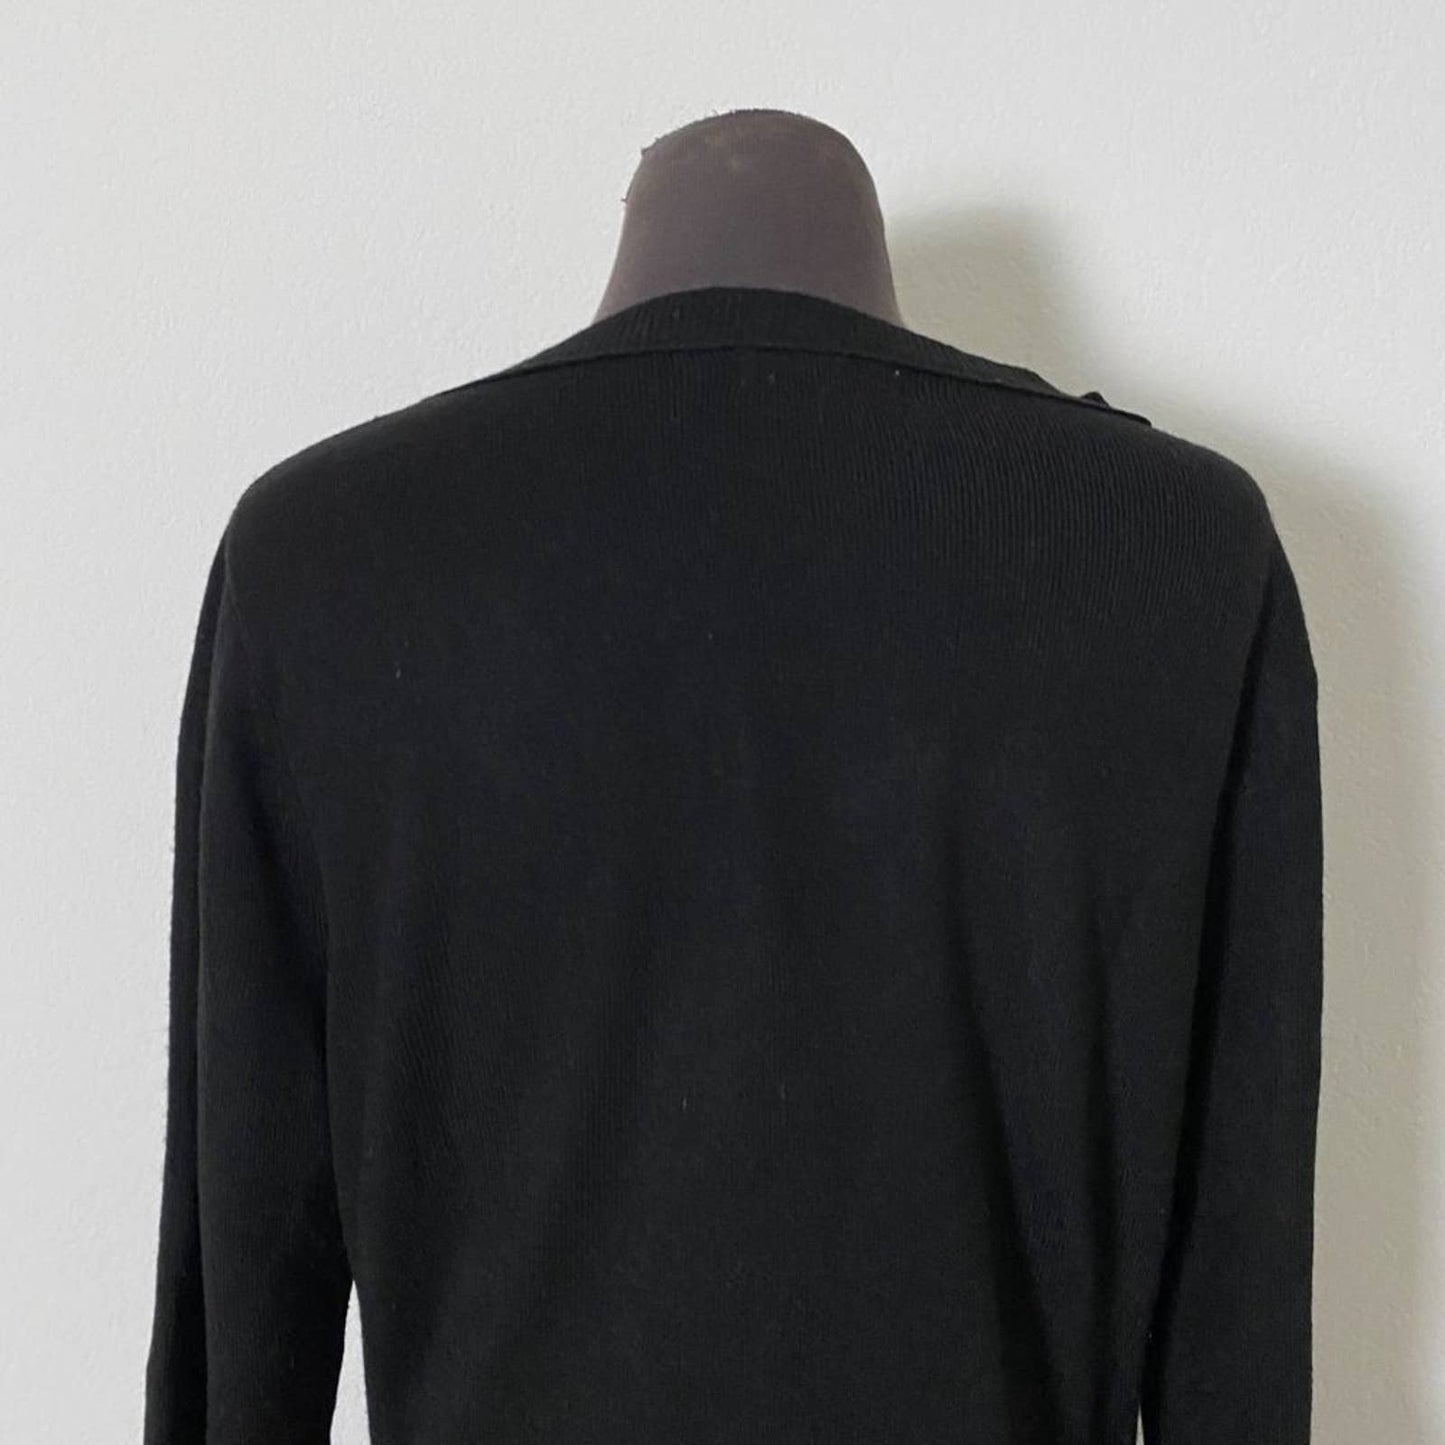 New York & Co sz M 3/4 sleeve scoop neck sweater